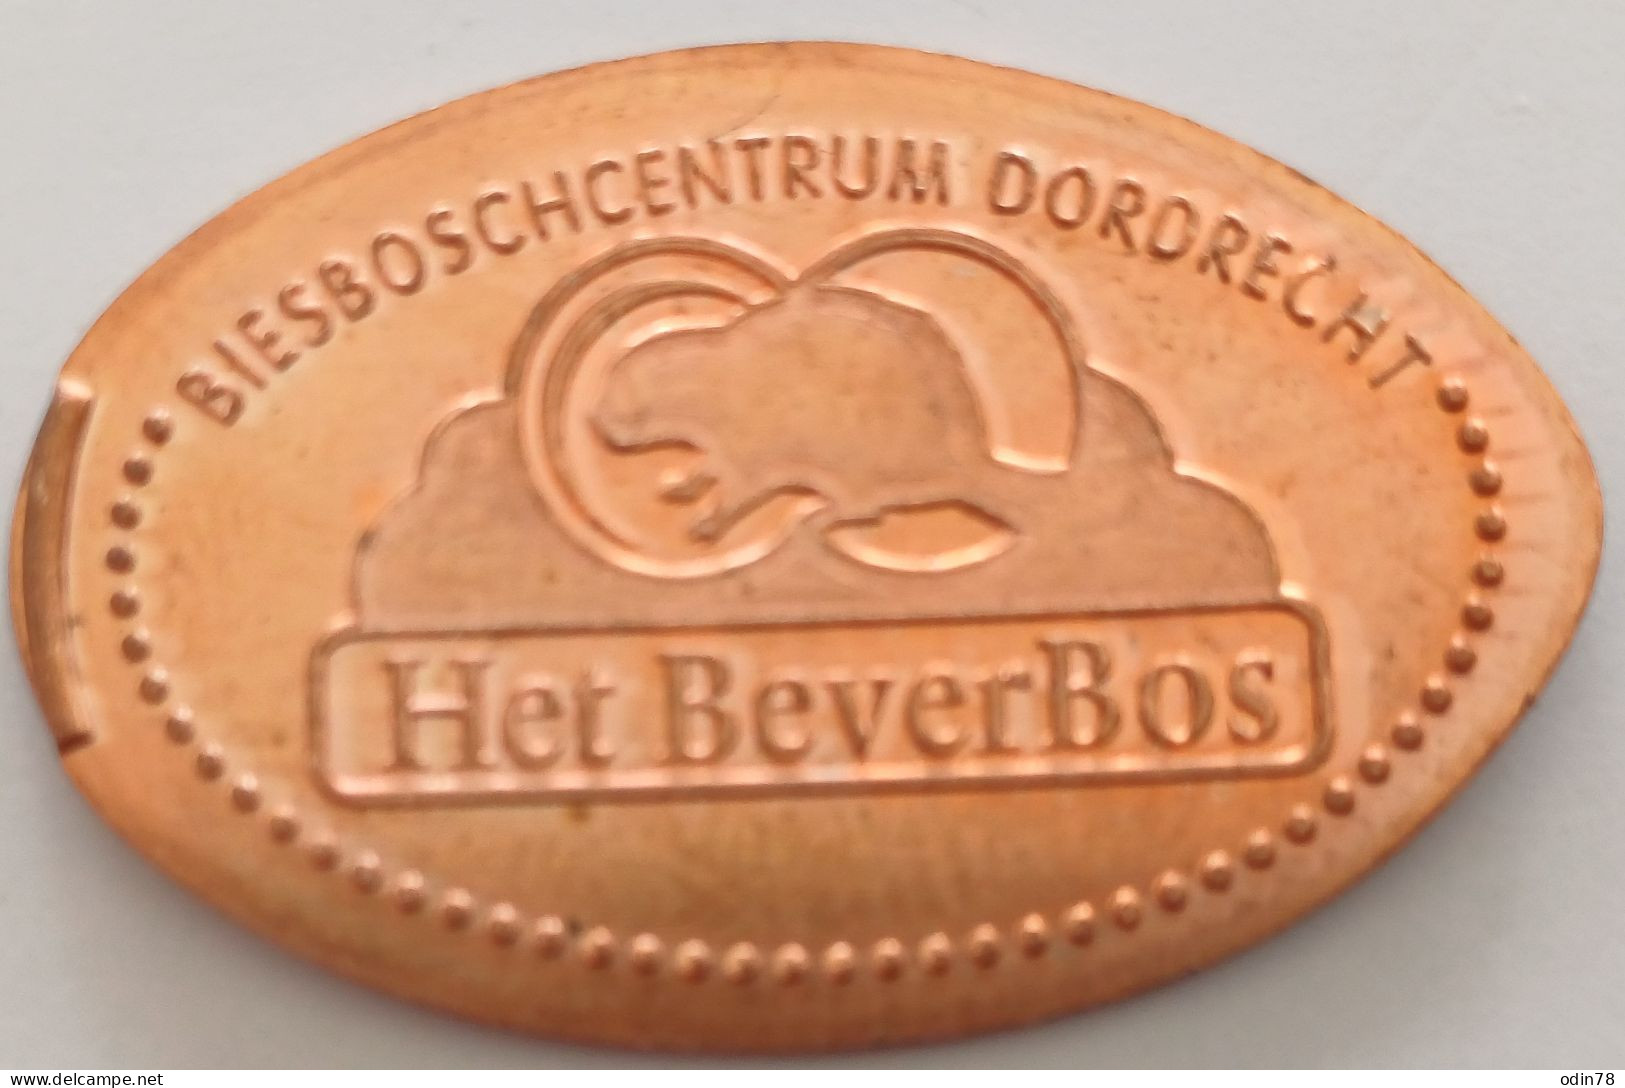 Pièce écrasée -  HET BEVERBOS - Souvenir-Medaille (elongated Coins)